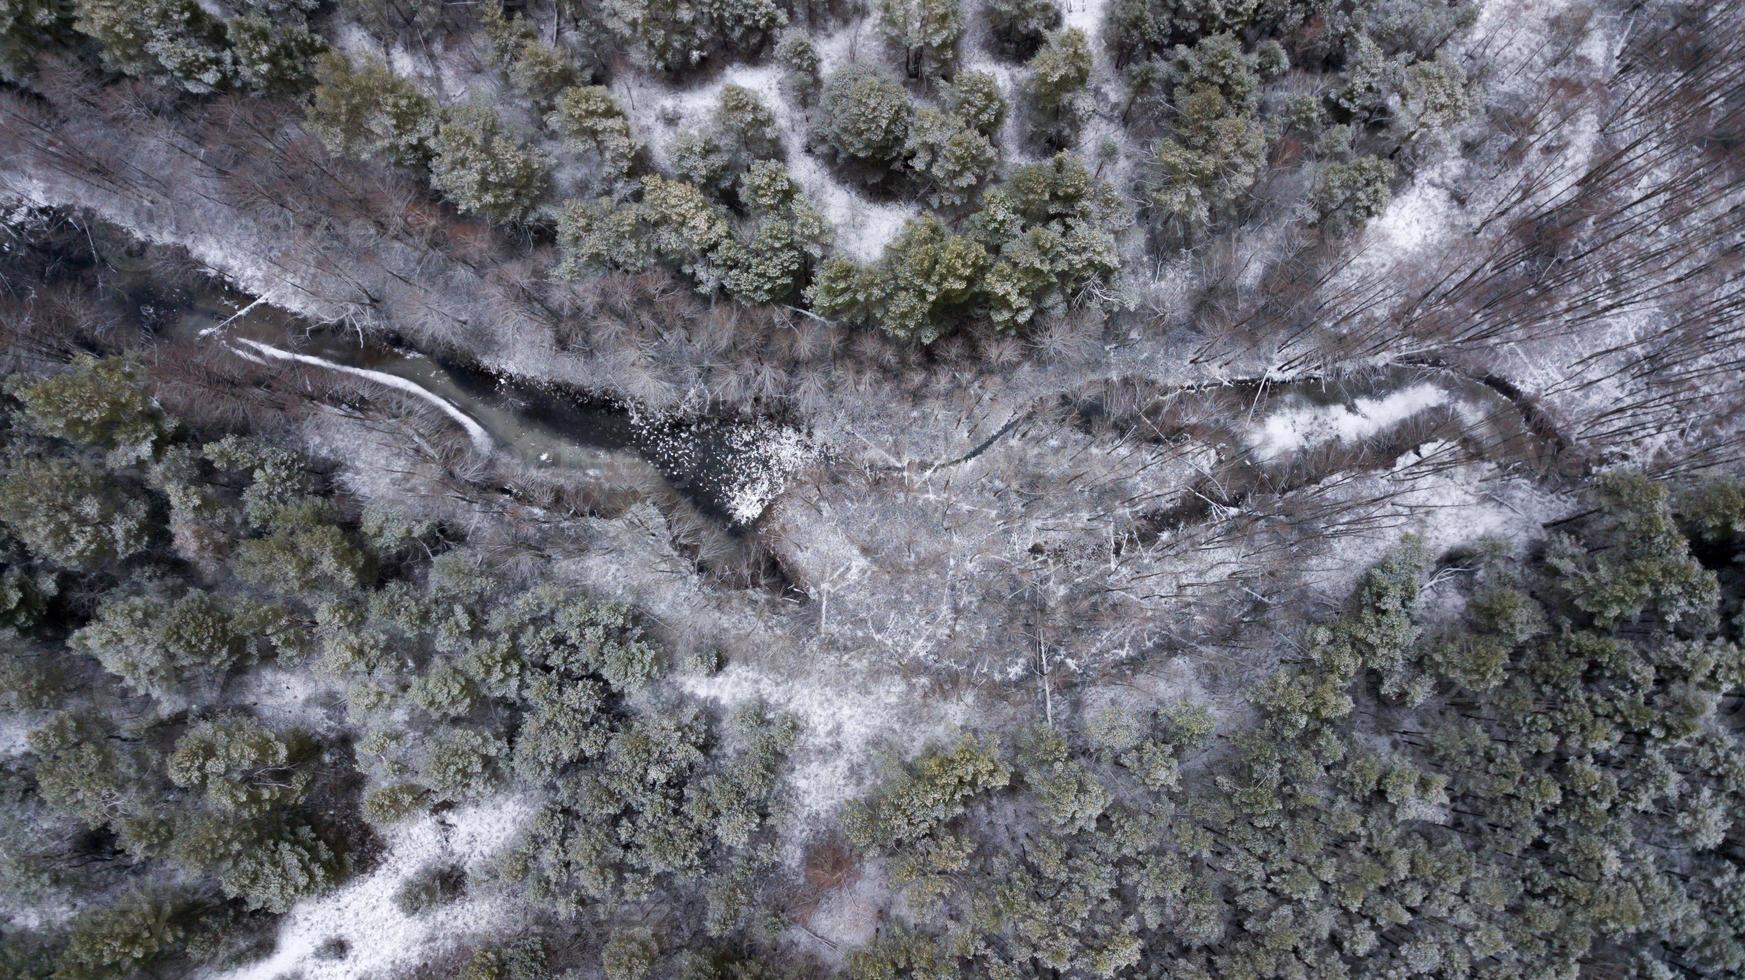 lago congelado en el bosque de invierno. fotografía aérea con cuadricóptero foto